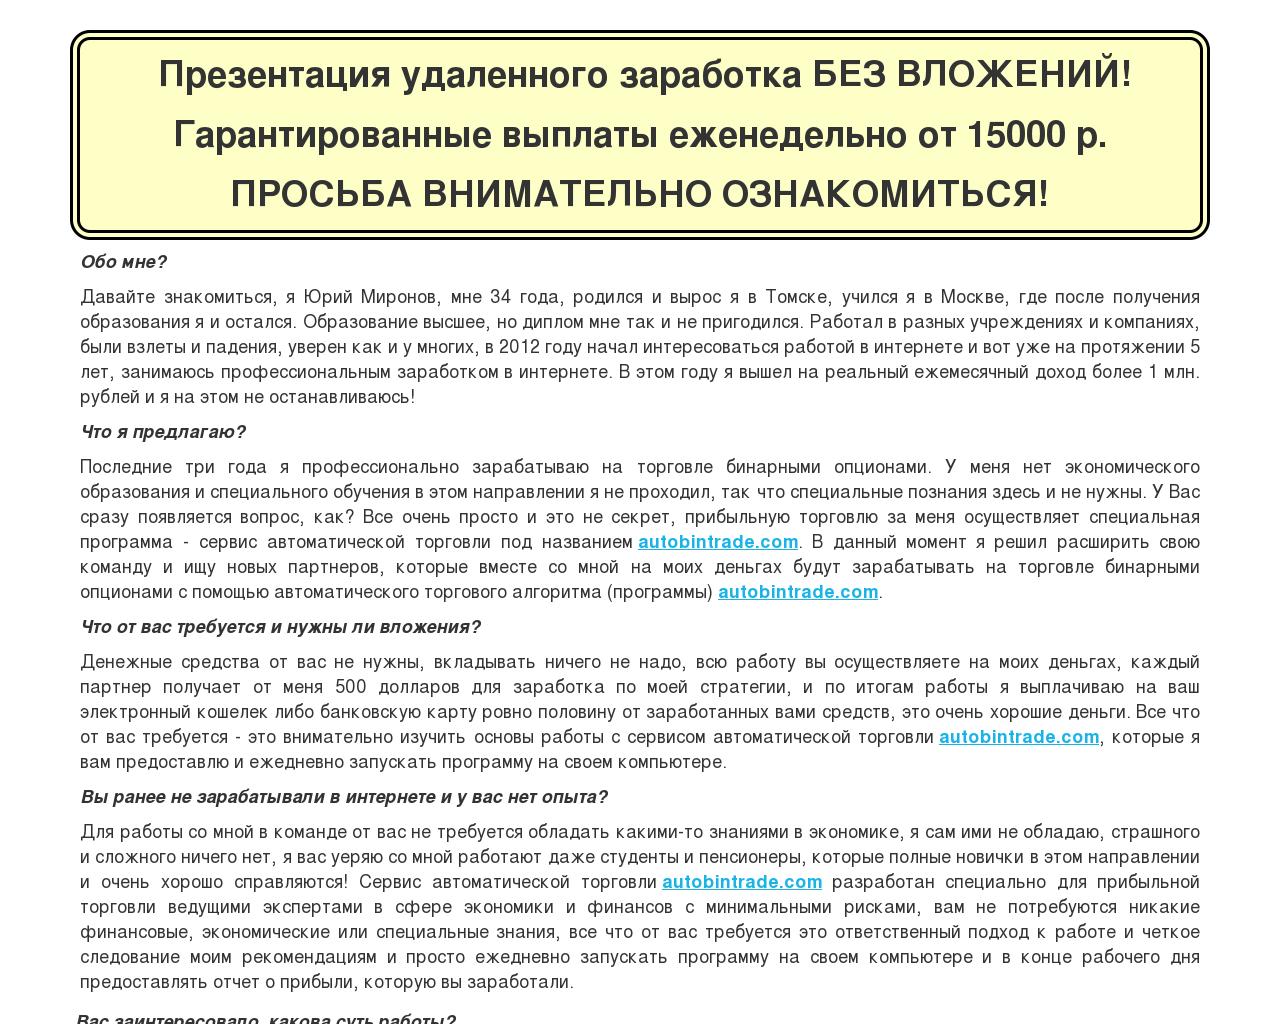 Изображение сайта systemsweb.ru в разрешении 1280x1024